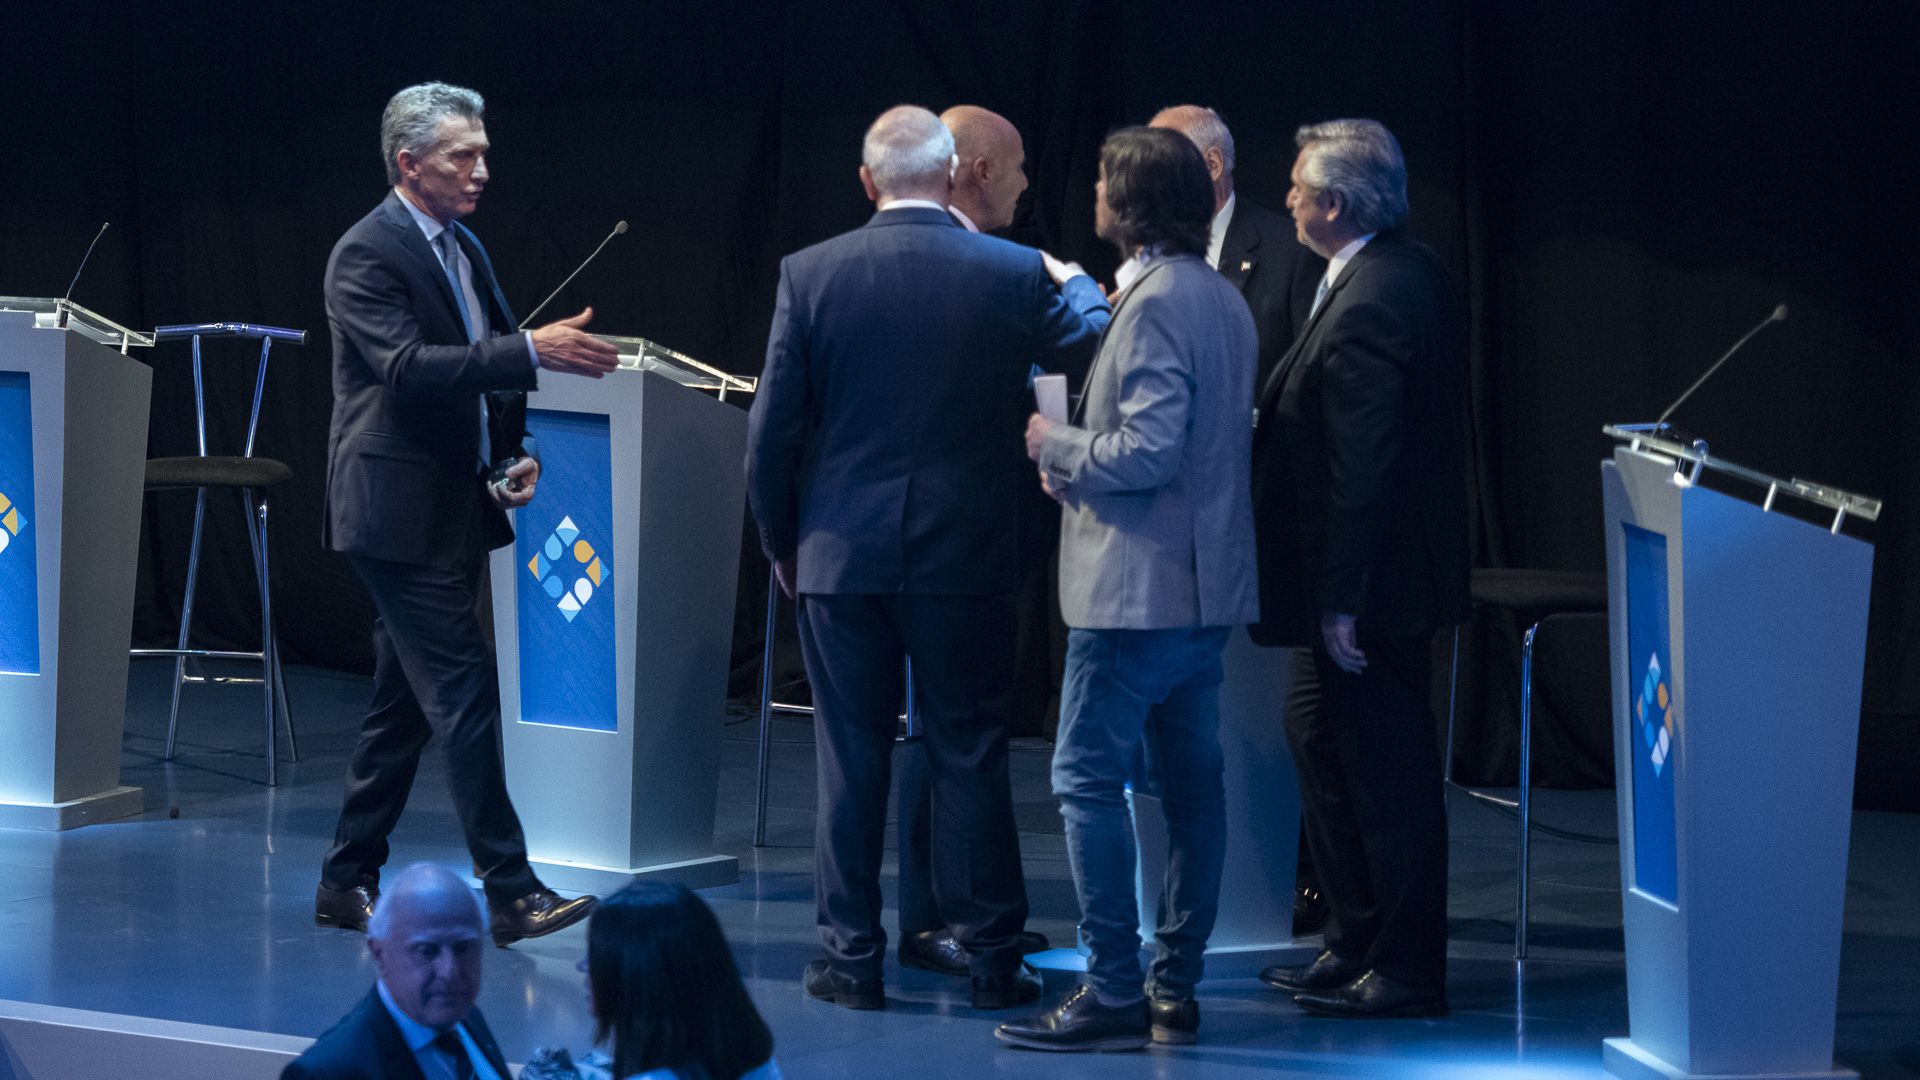 Macri se acerca a saludar tras el debate (foto Adrián Escandar)